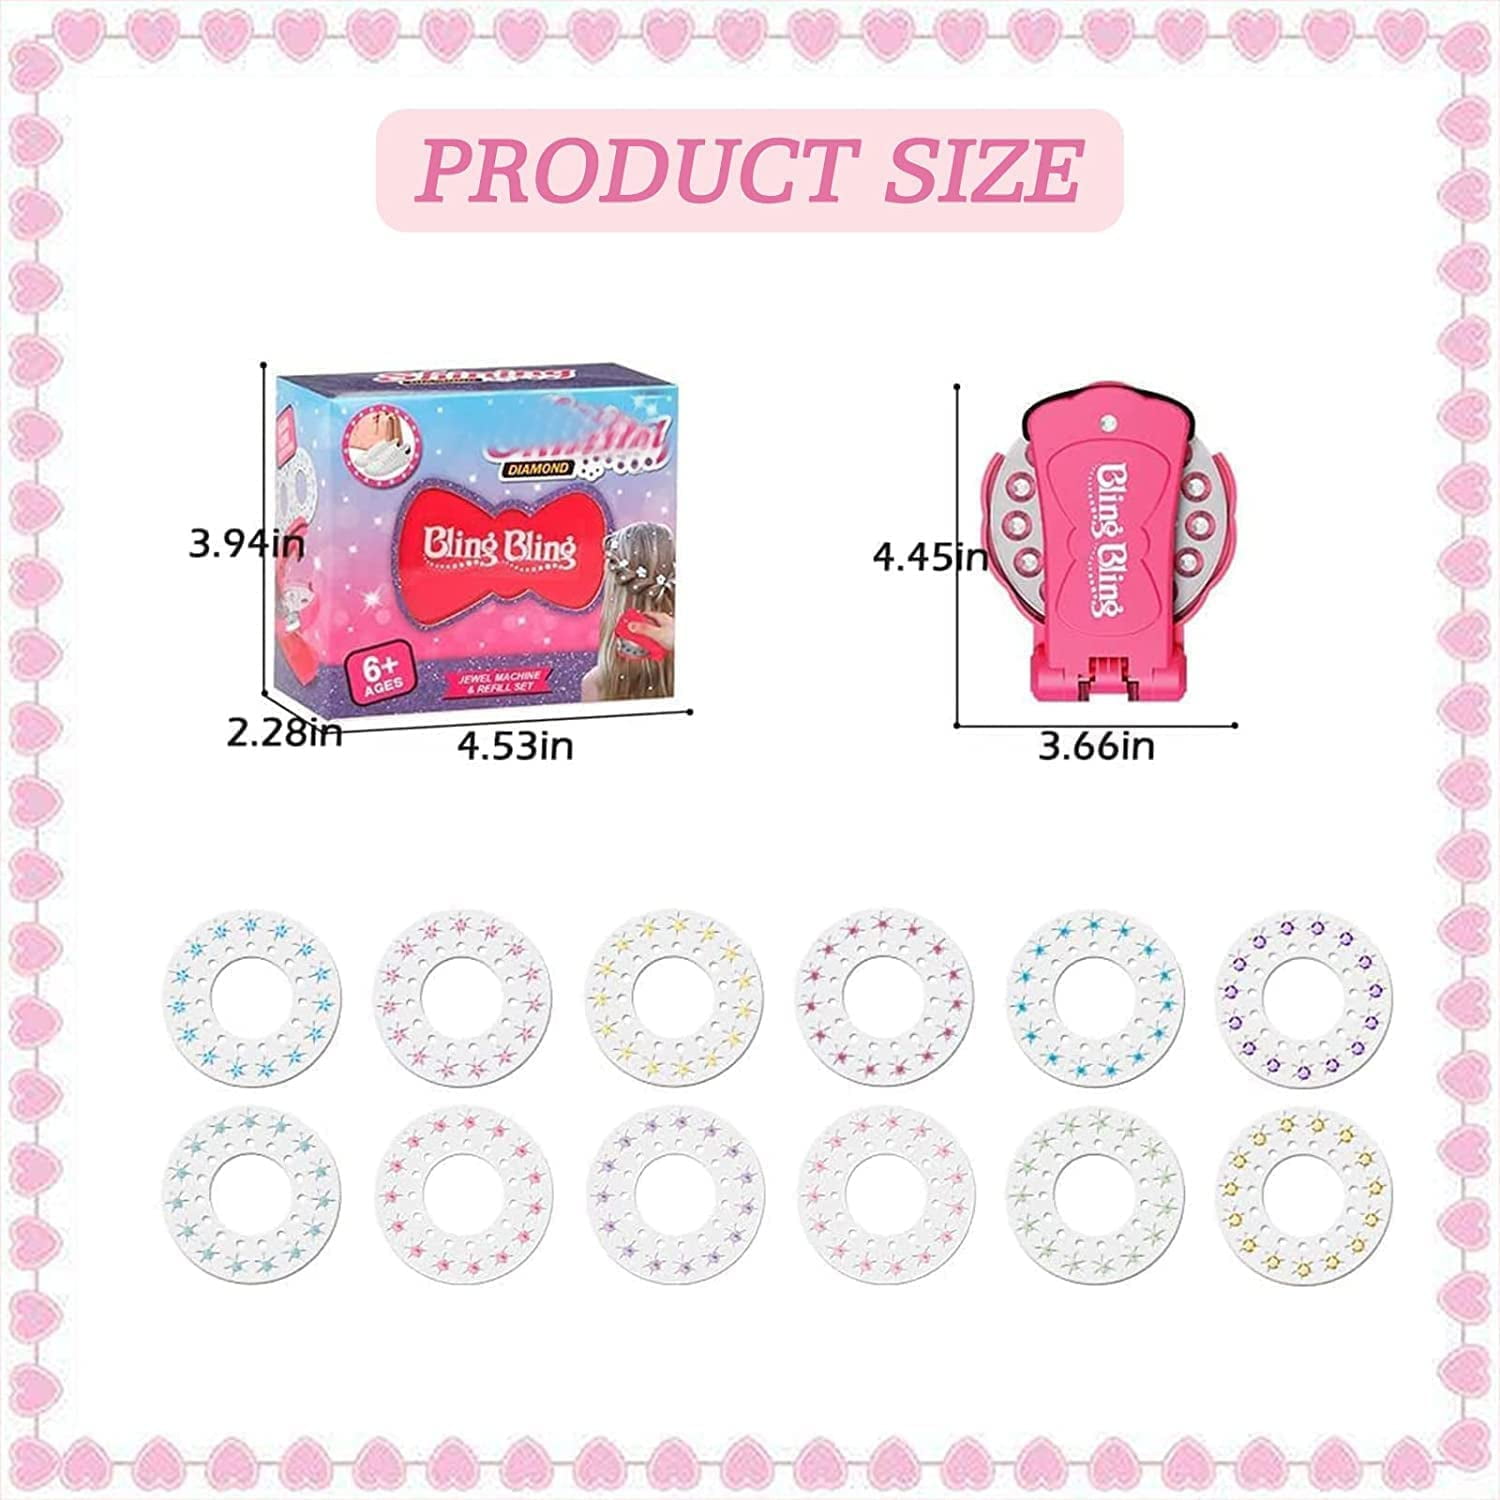 Blinger Hair Gems Dazzling Gem Refill Kits - 4 Choices | HONEYPIEKIDS Princess